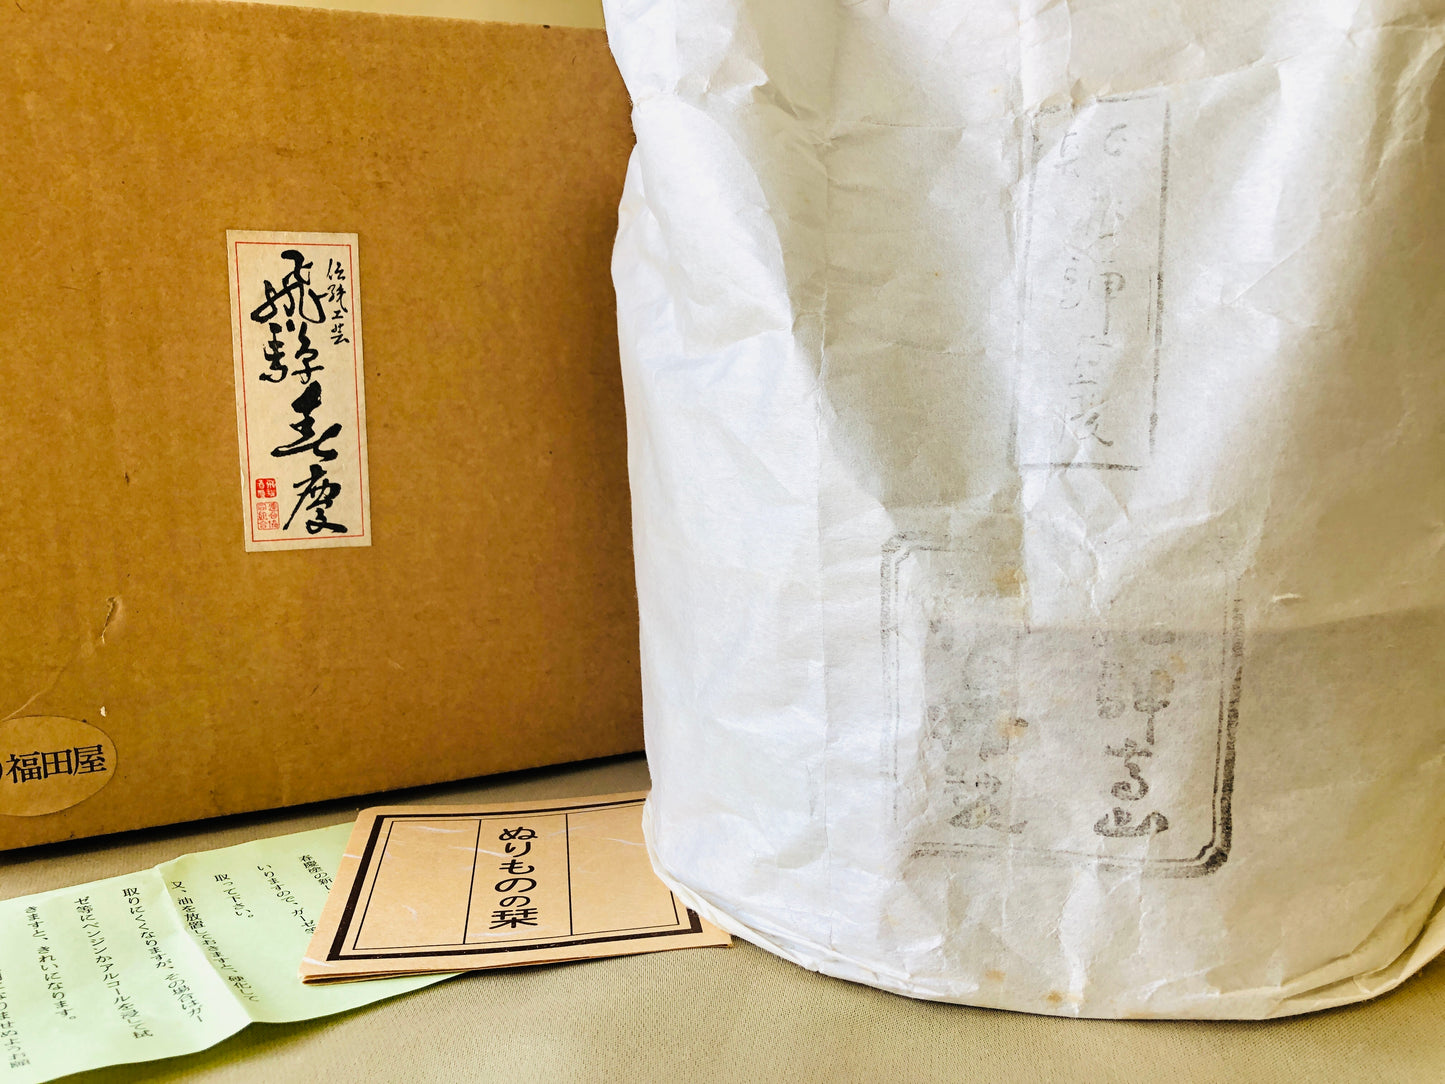 Y4340 TRAY Shunkei Lacquer tobacco cigarettes handle box OBON OZEN Japan antique